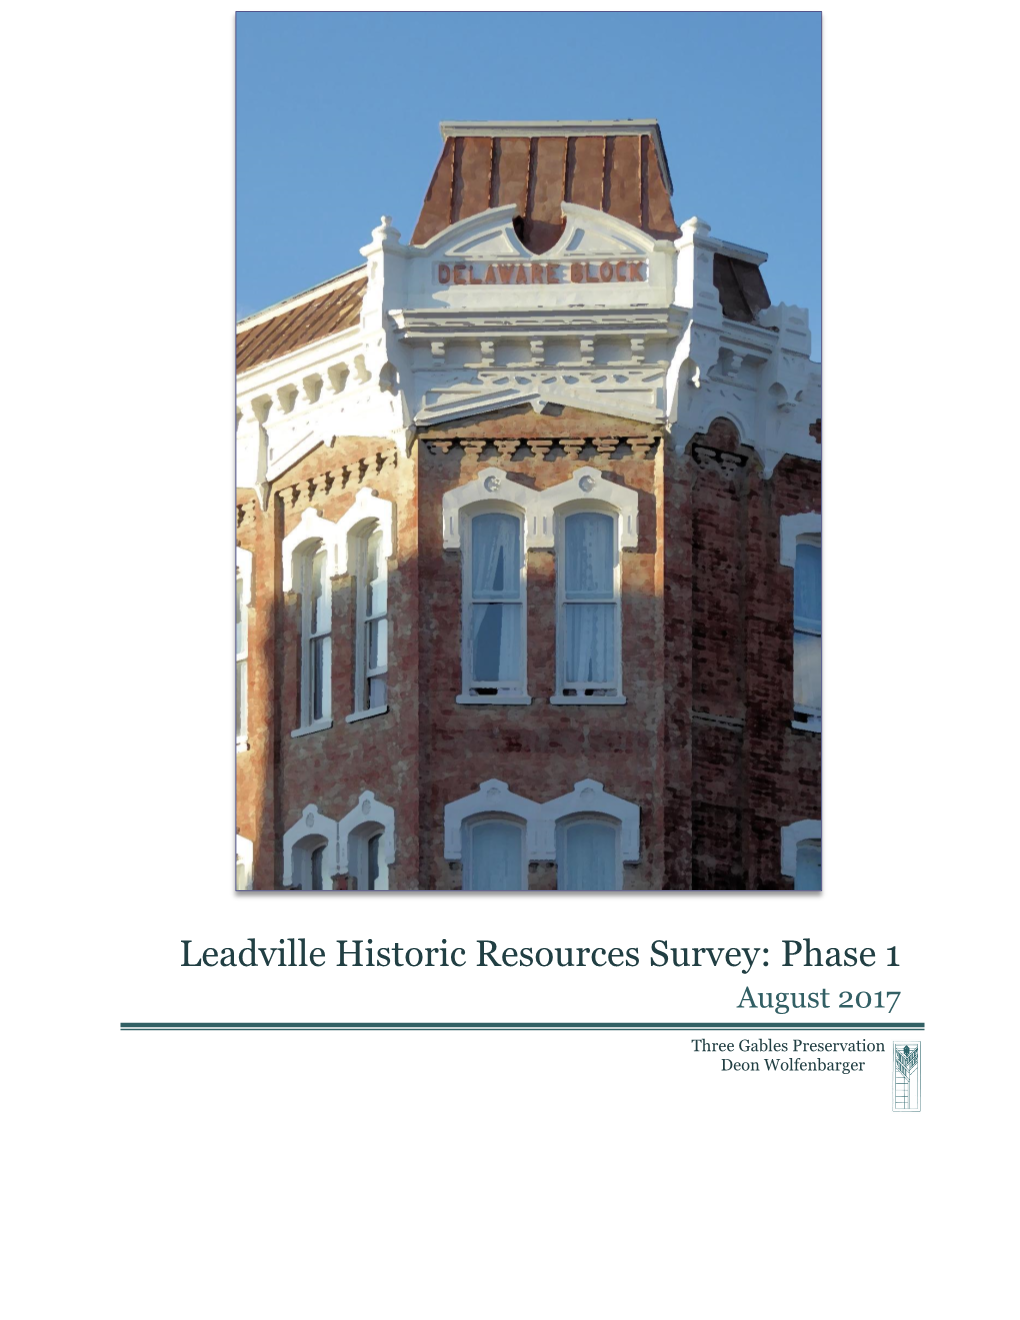 Historic Resources Survey: Phase I